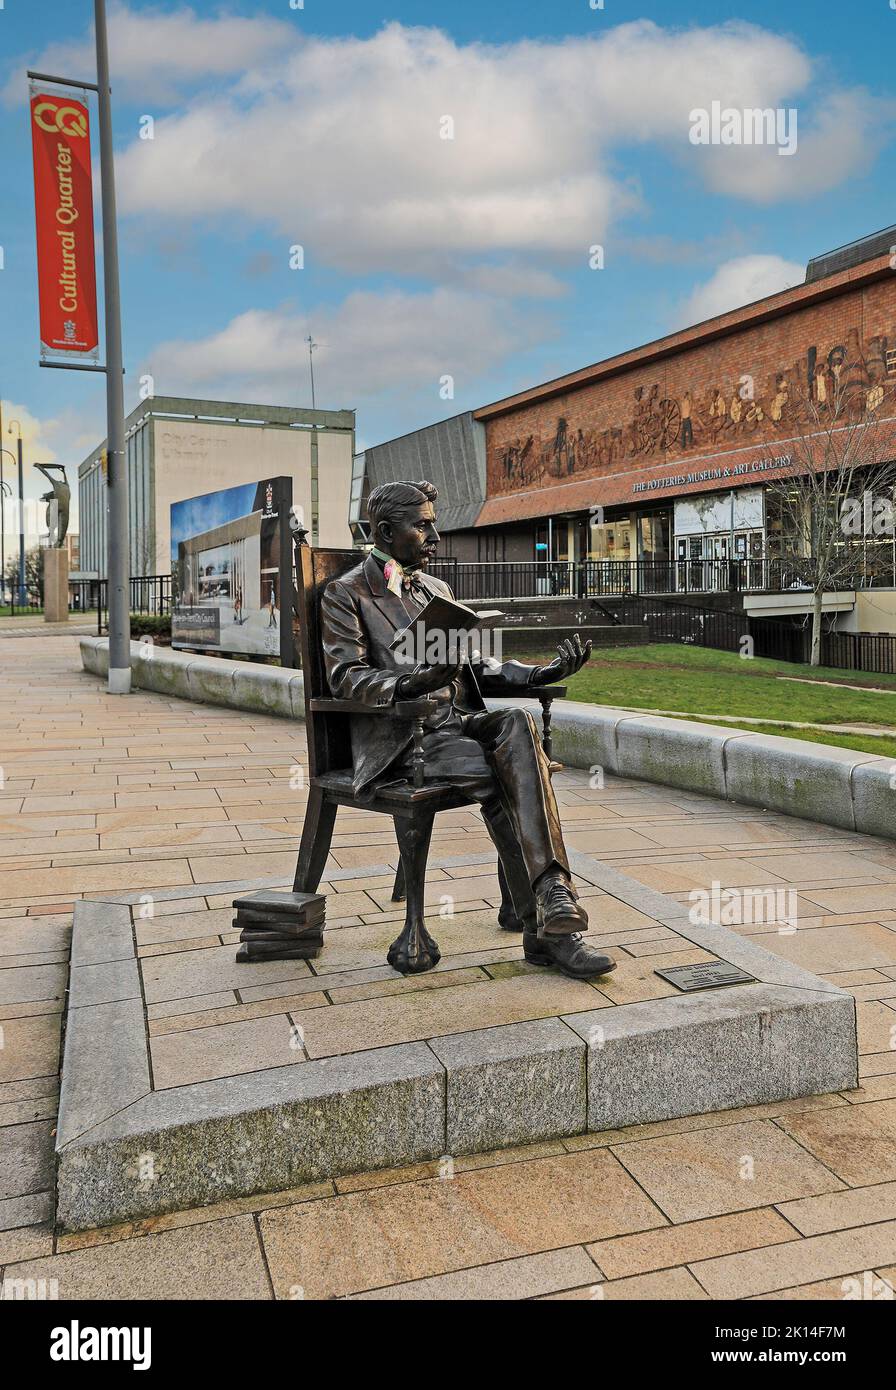 Escultura en bronce del novelista, dramaturgo y ensayista Arnold Bennett en las afueras del Museo de Cerámica y Galería de Arte, Hanley, Stoke on Trent, Inglaterra Foto de stock